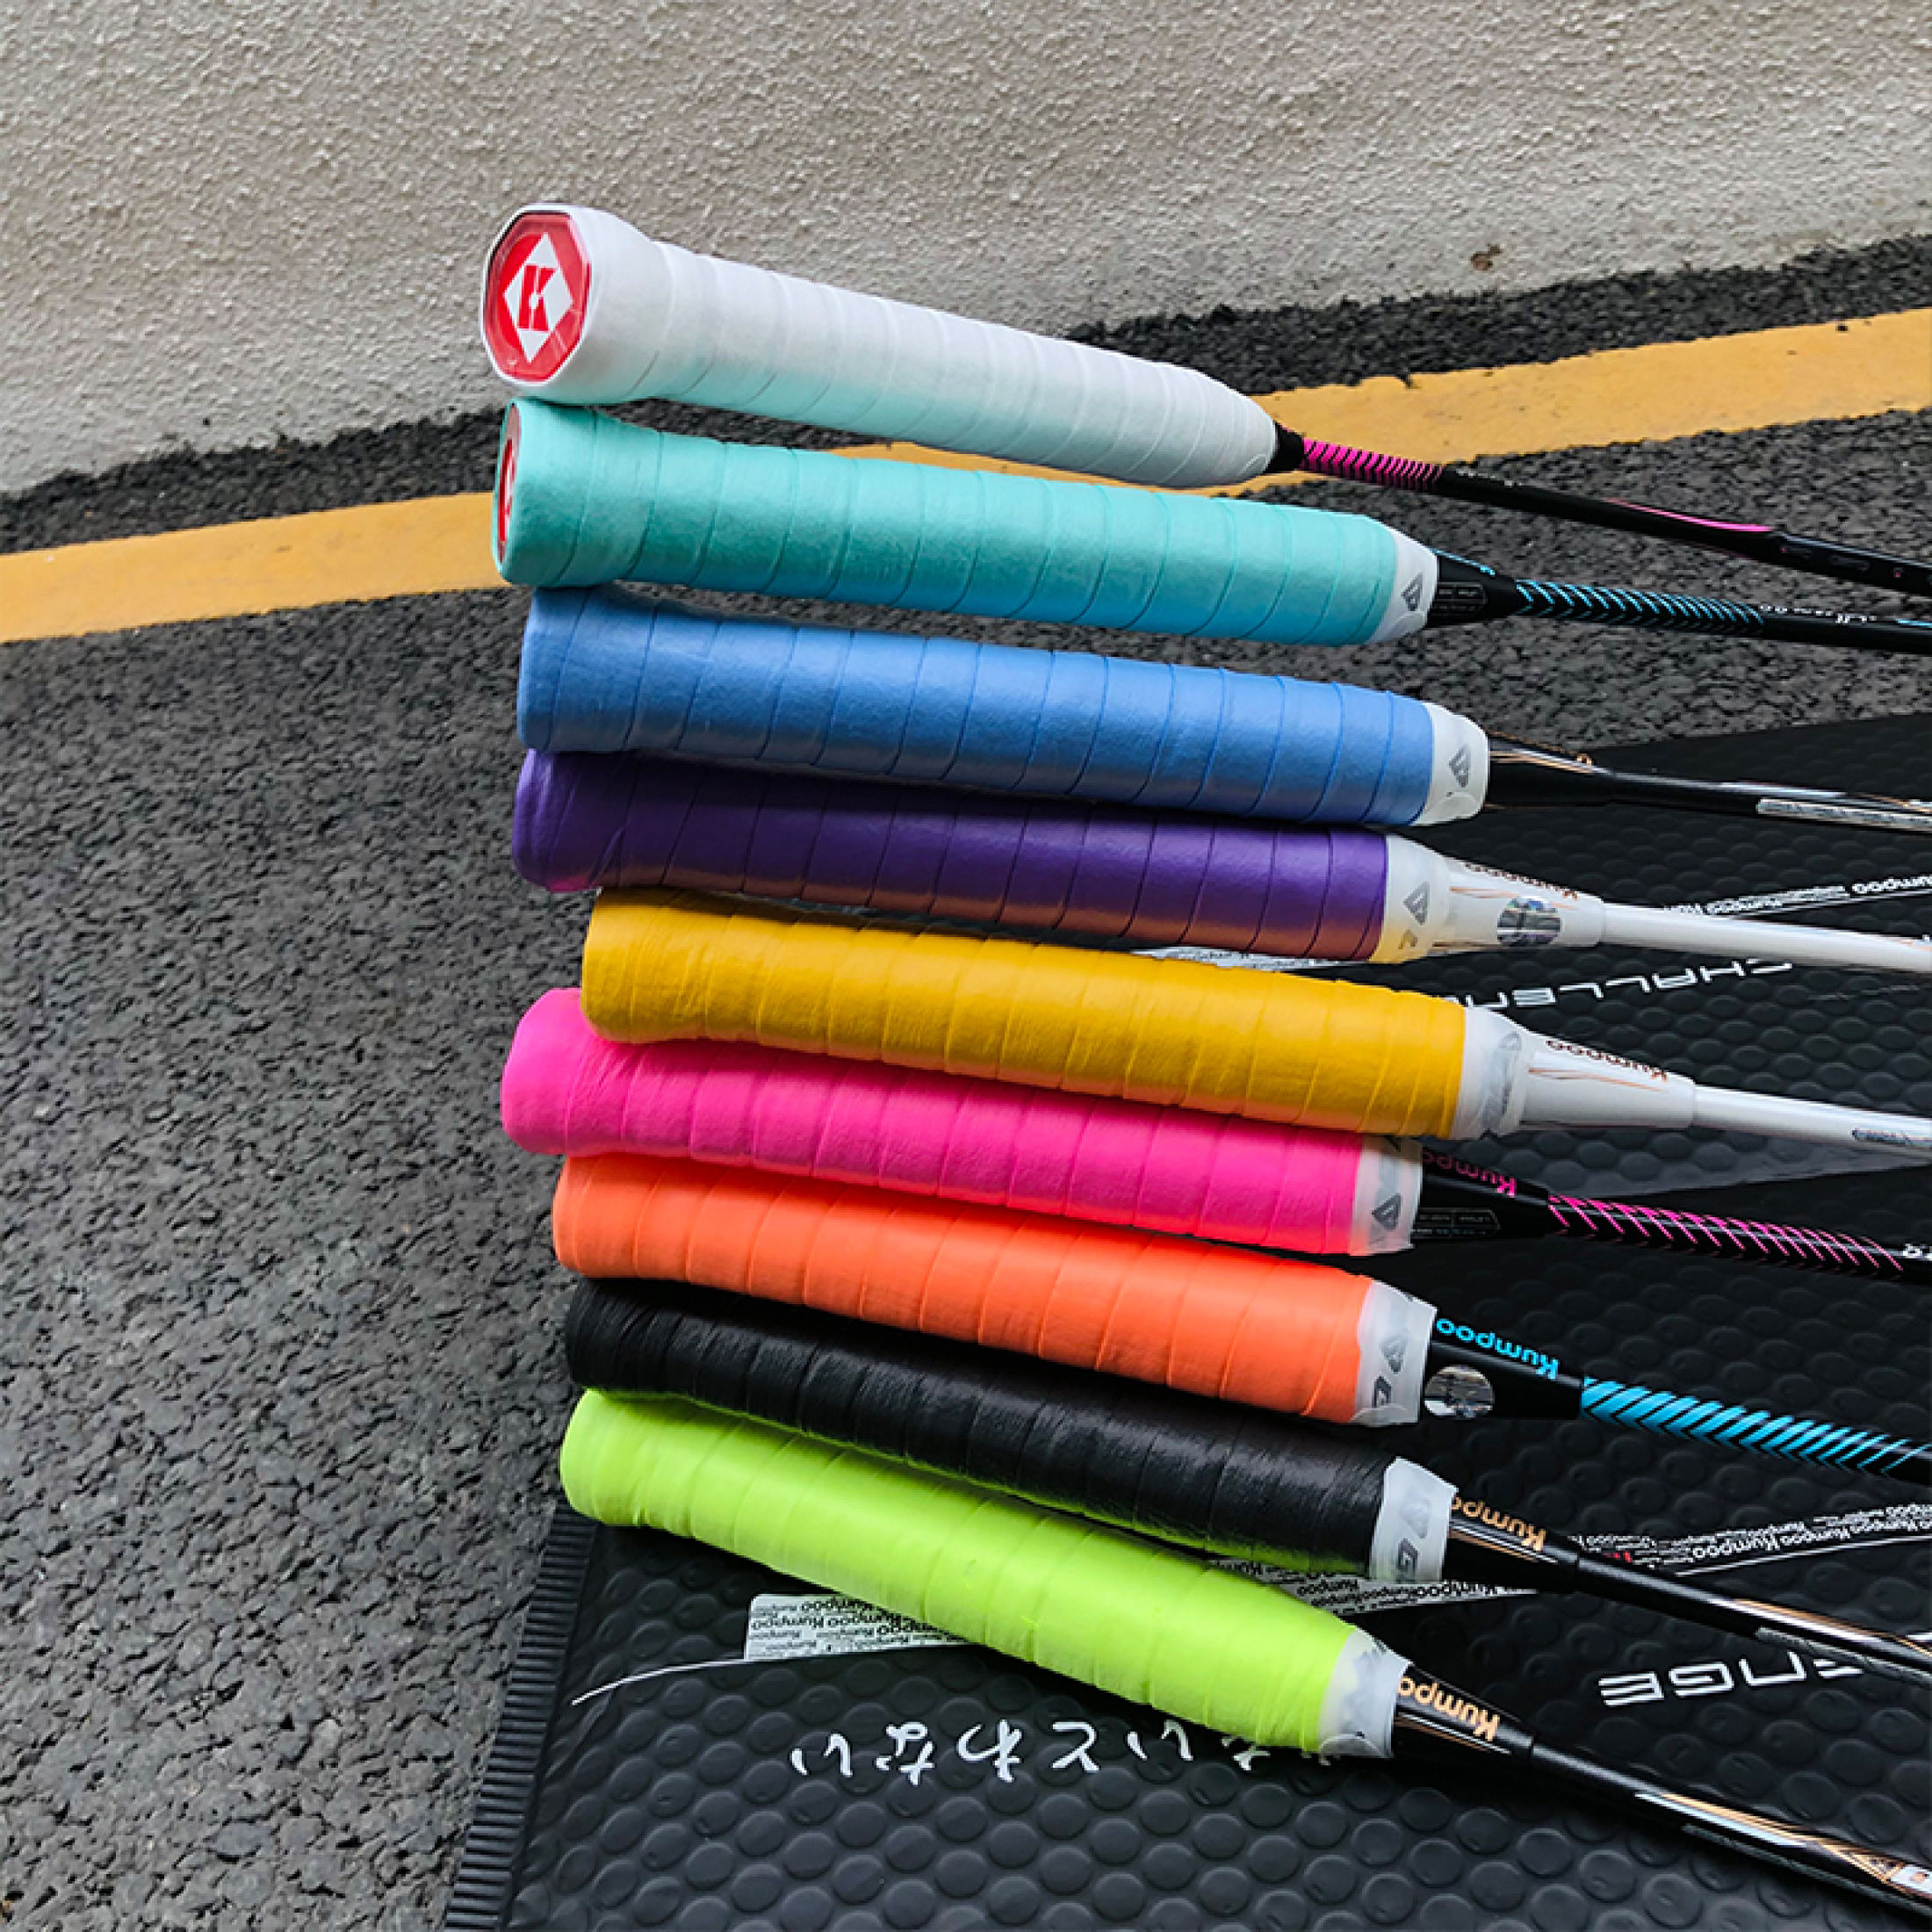 Toyvian 1 Roll Black Tape Badminton Racket Adhesive Tape Tennis Grip  Badminton Grip Tape Grip Tape for Handles Non-Slip Racket Tapes Racket  Anti-Slip